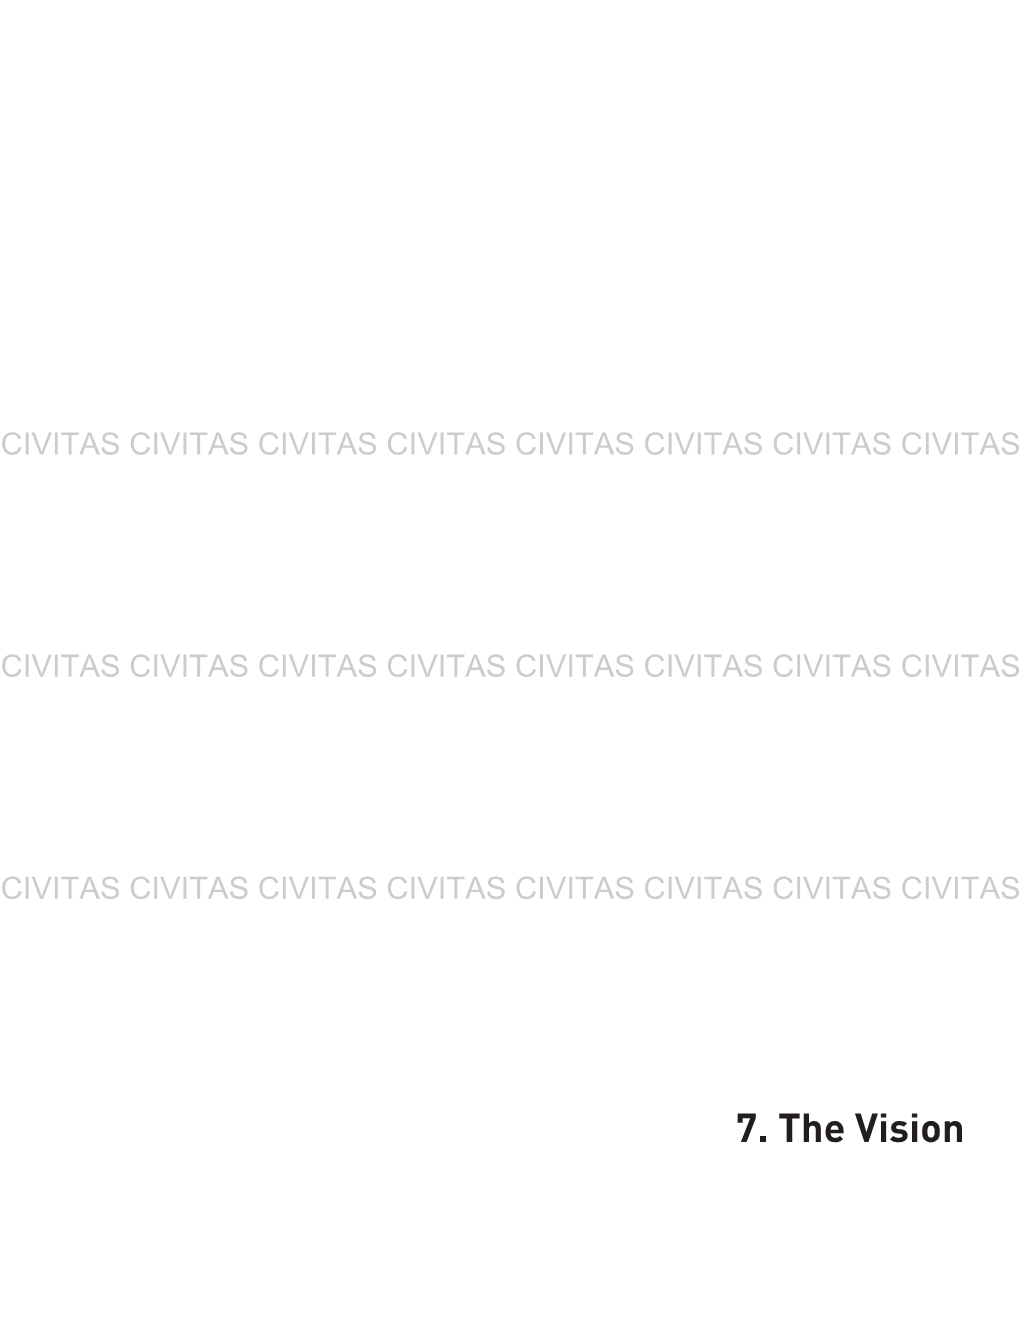 7. the Vision CIVITAS CIVITAS CIVITAS CIVITAS CIVITAS CIVITAS CIVITAS CIVITAS